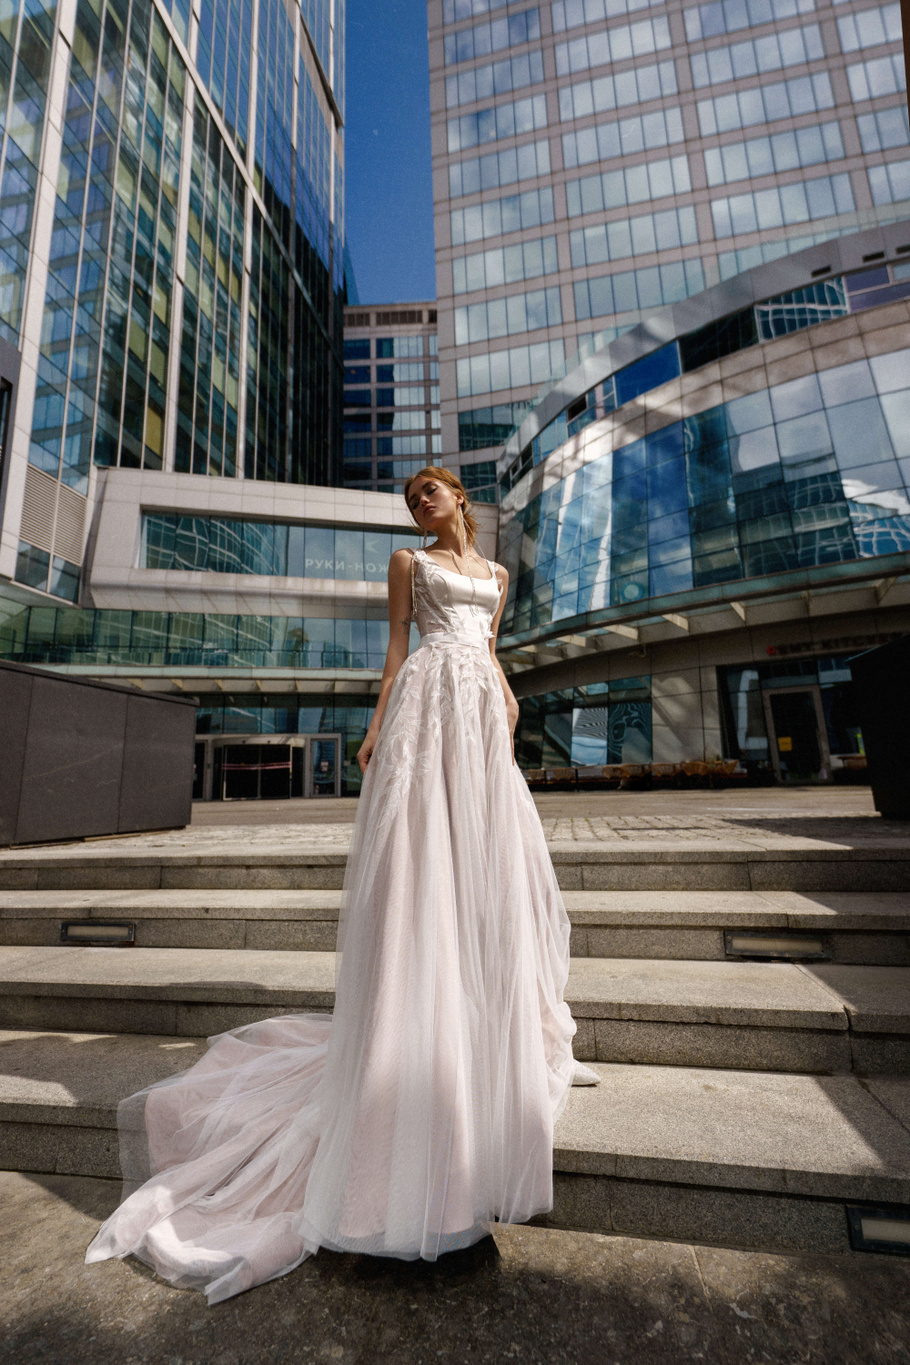 Купить свадебное платье «Лиянда» Рара Авис из коллекции О Май Брайд 2021 года в интернет-магазине